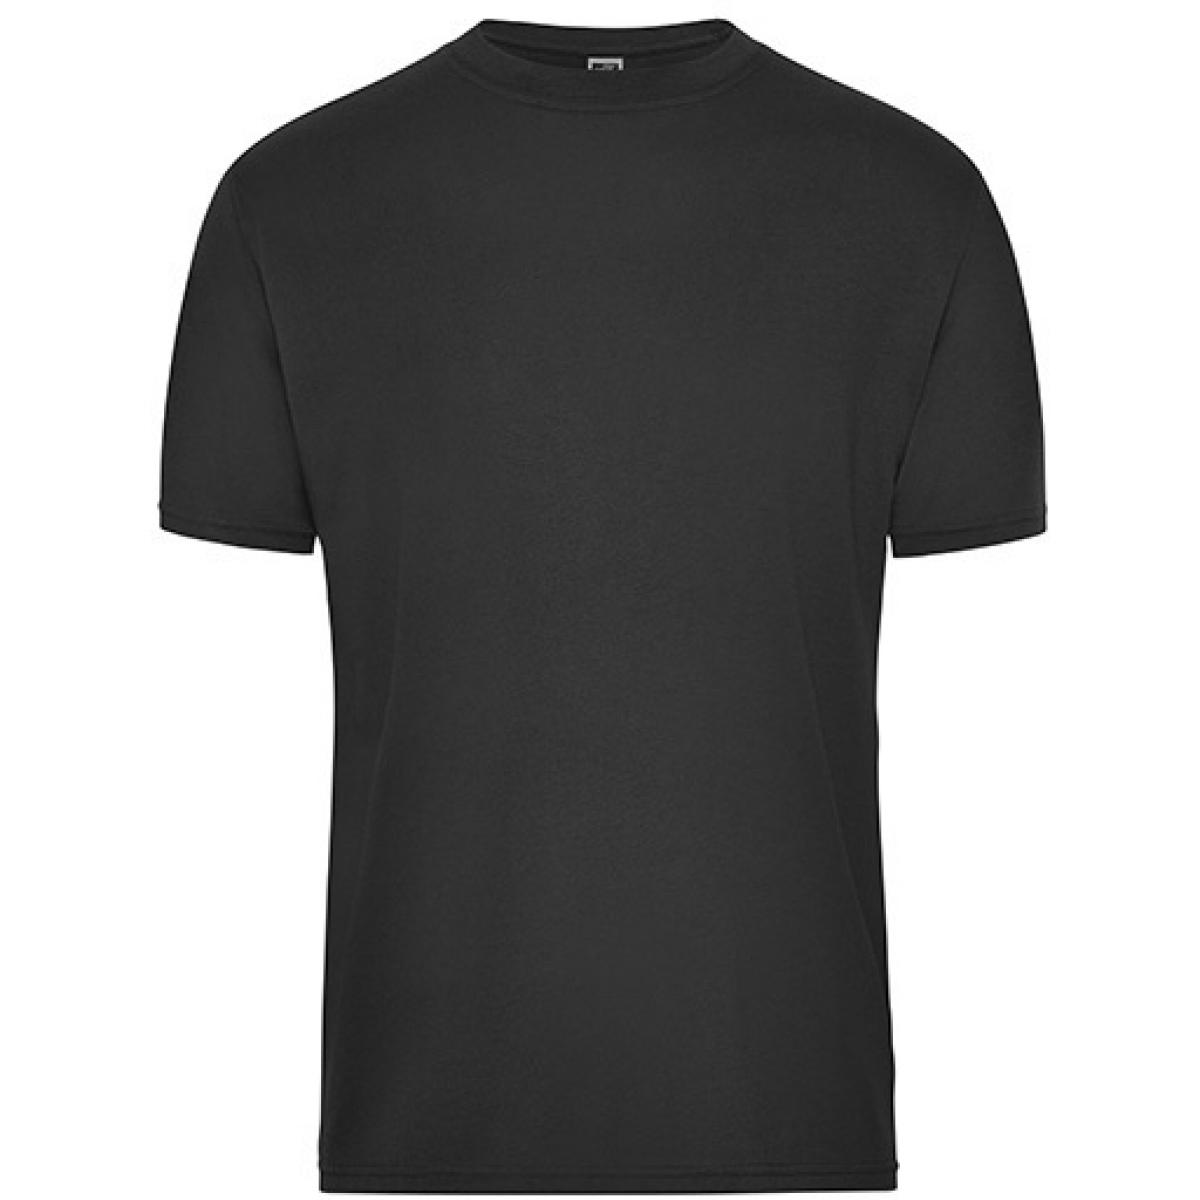 Hersteller: James+Nicholson Herstellernummer: JN1808 Artikelbezeichnung: Men‘s BIO Workwear T-Shirt, Waschbar bis 60 °C Farbe: Black